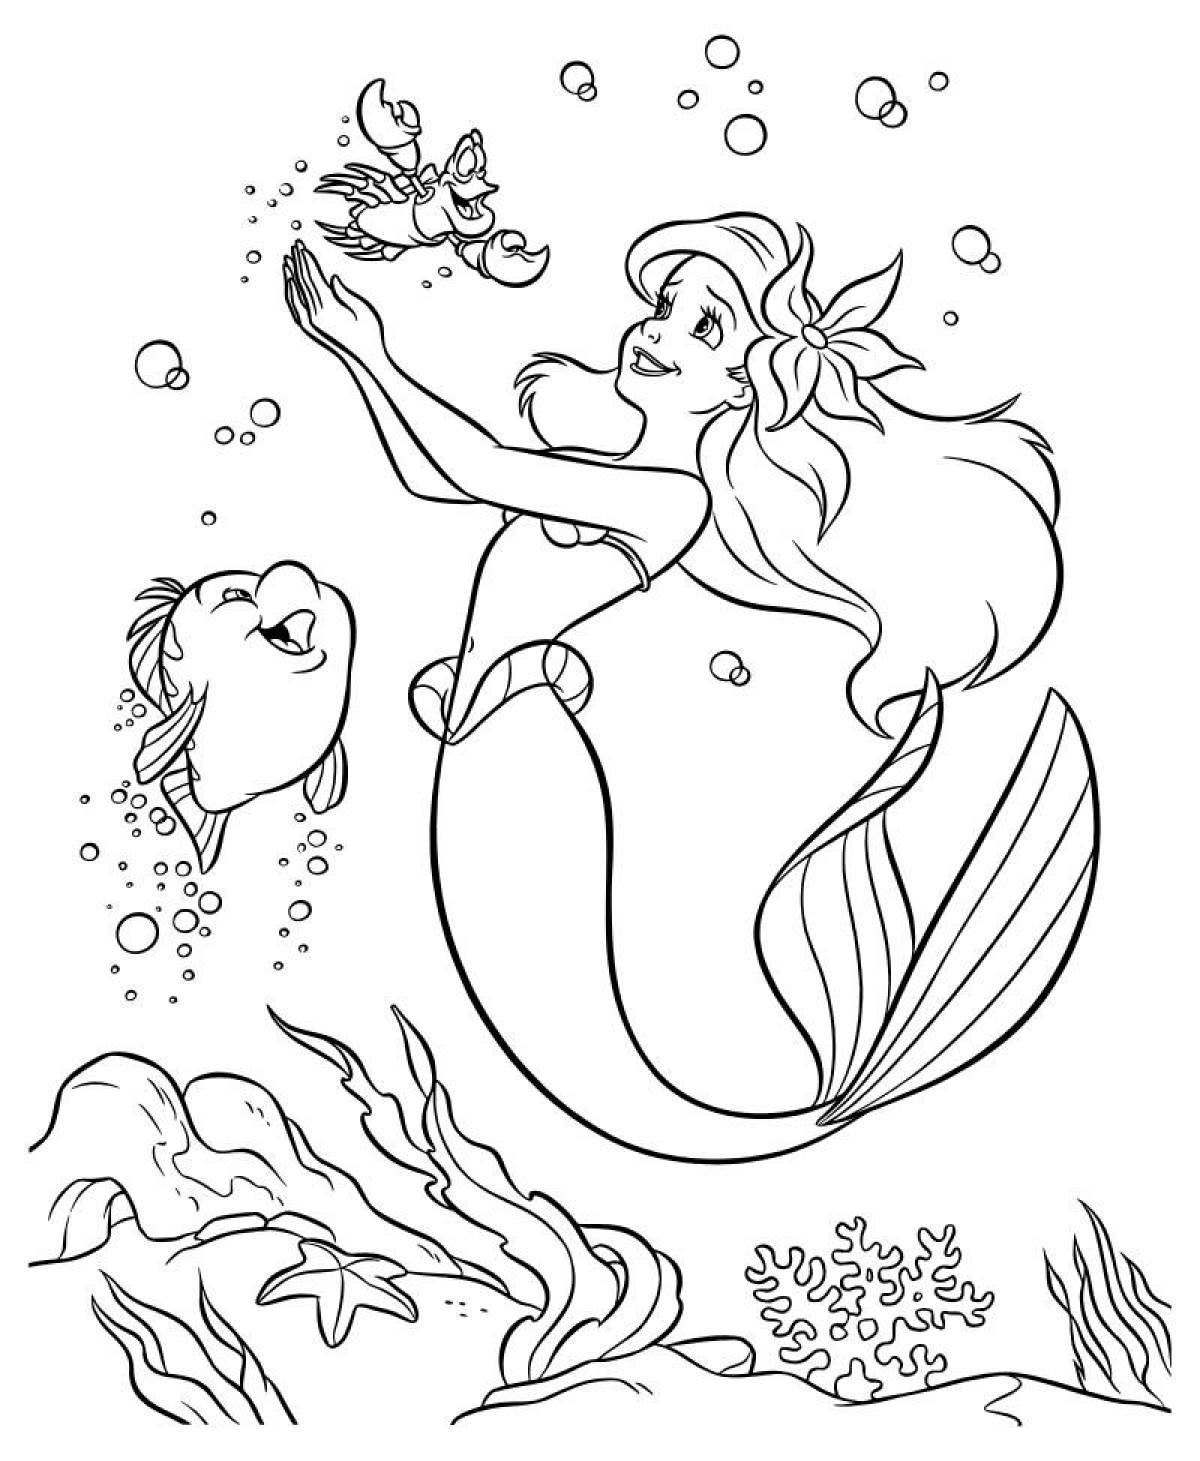 Generous mermaid coloring page